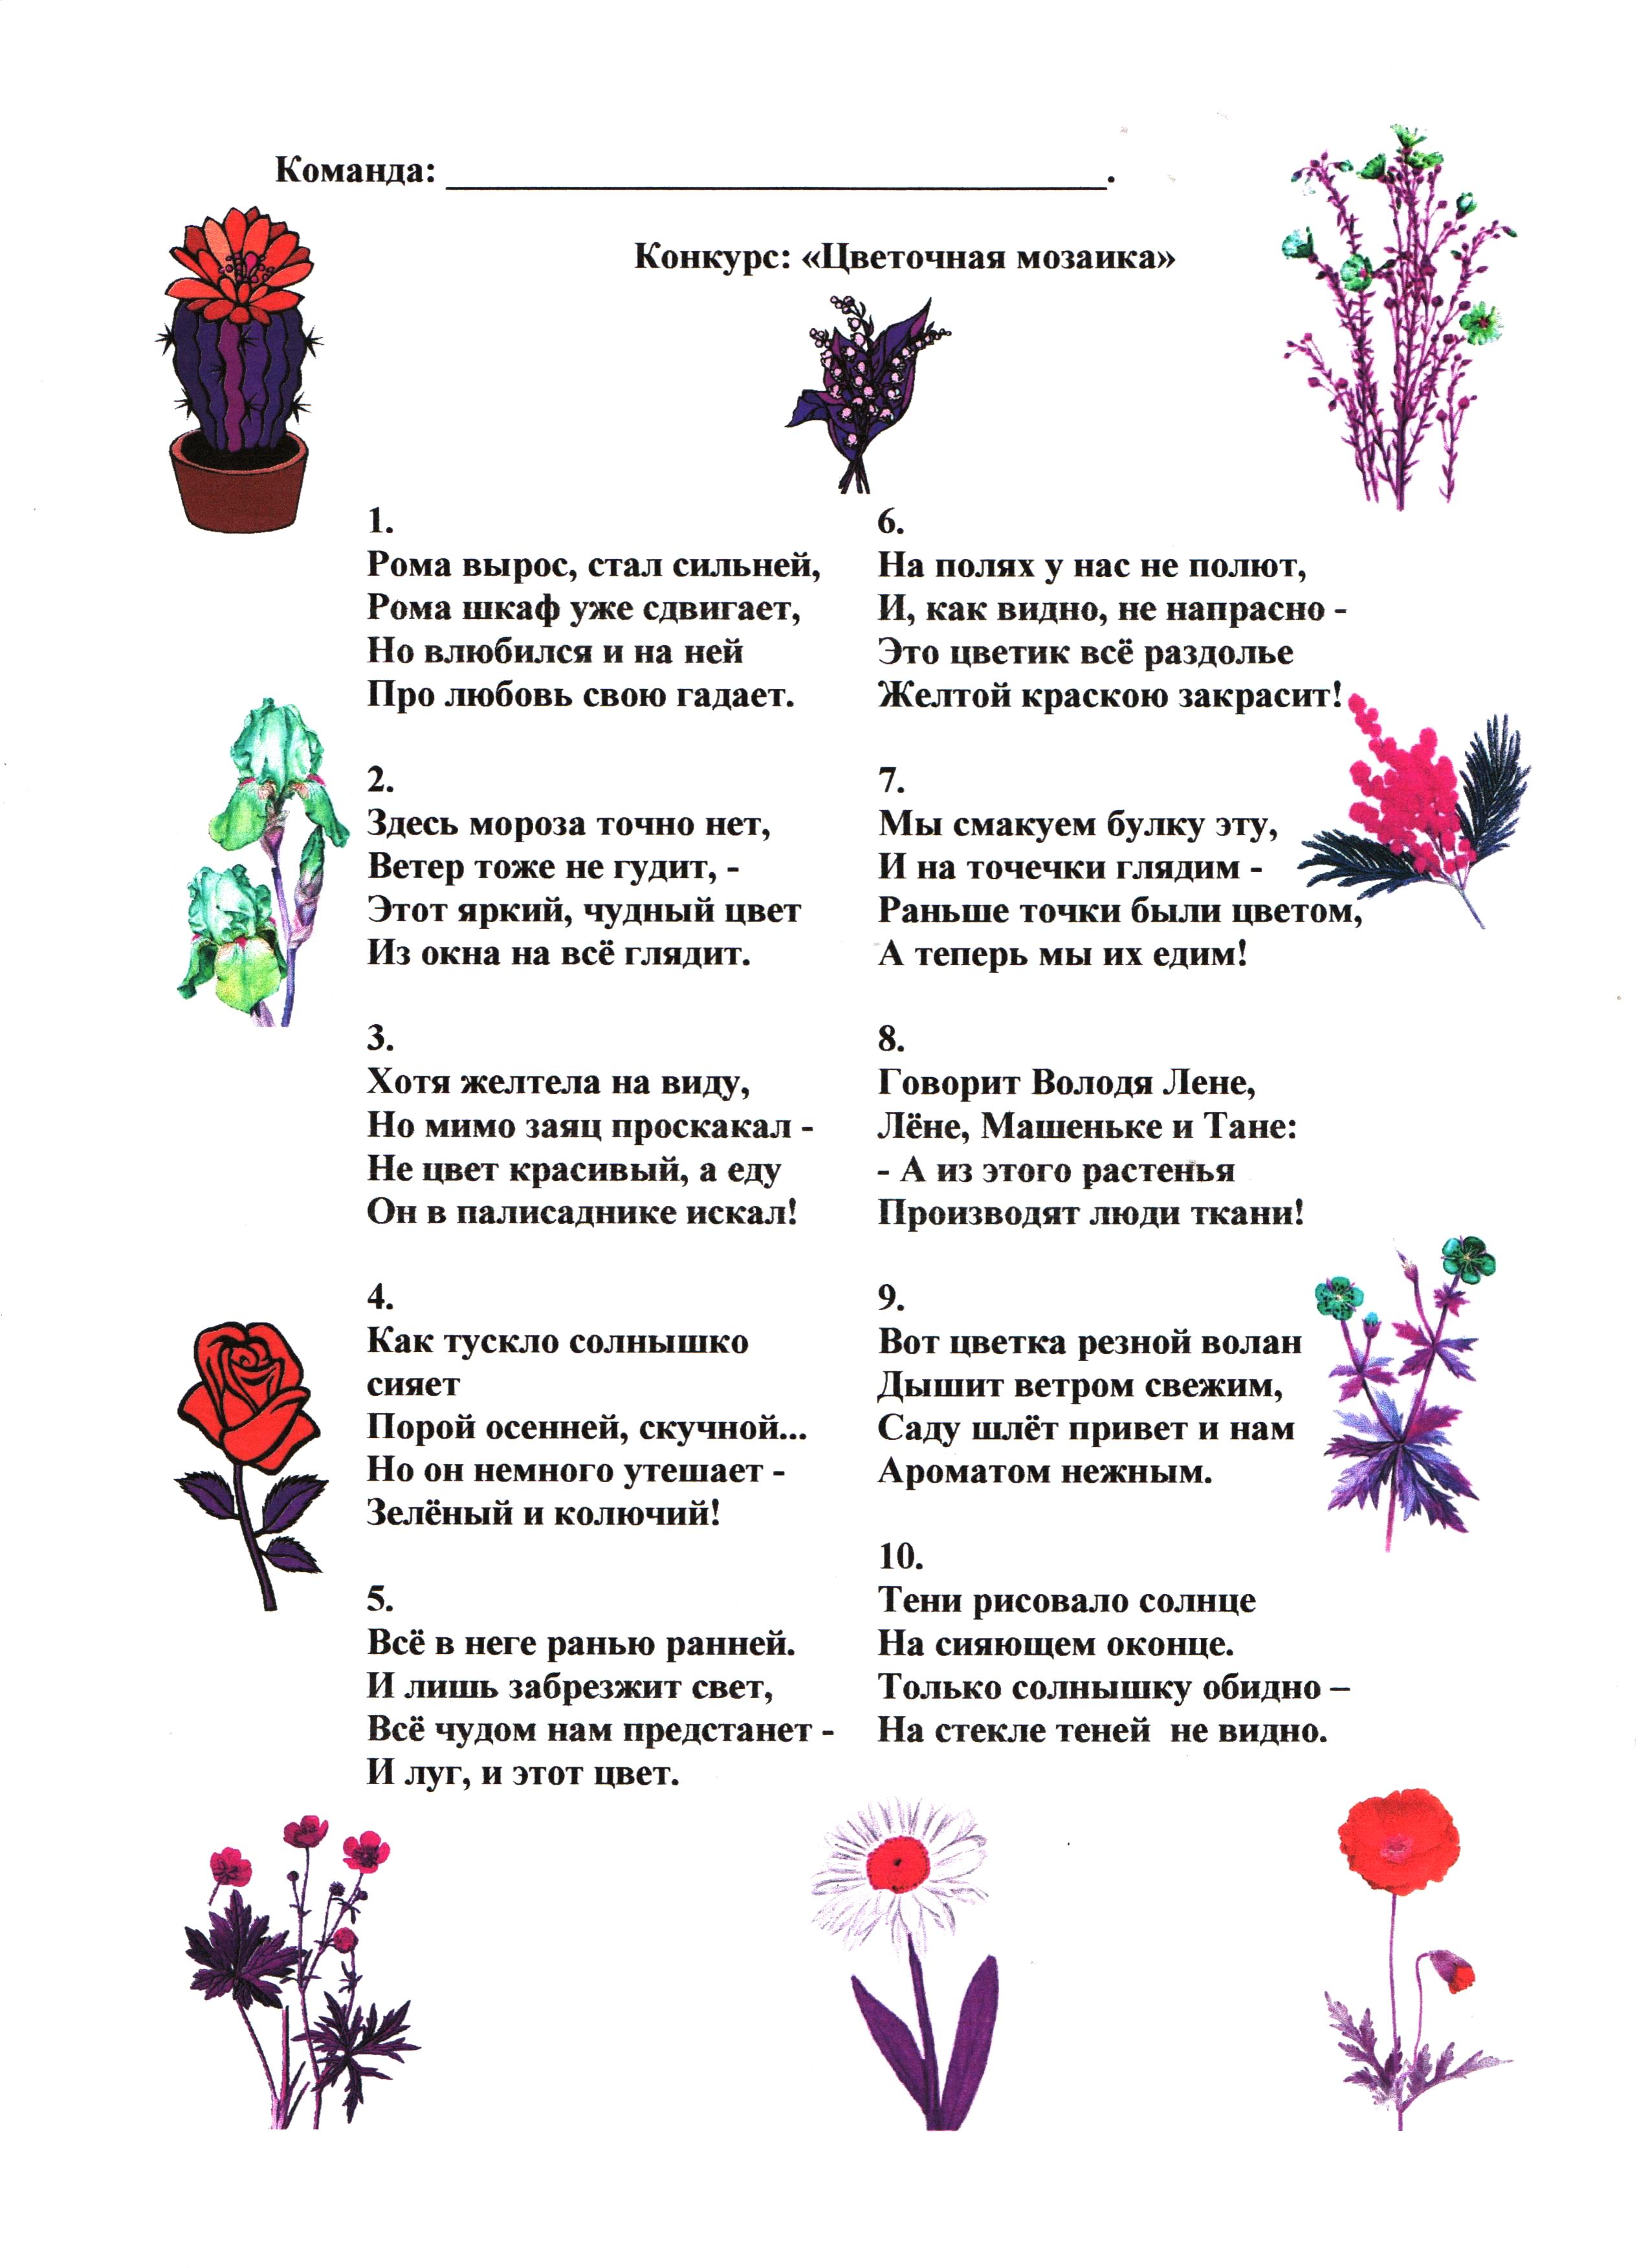 Детские загадки про цветы: комнатные, полевые, луговые и садовые. загадки с ответами про лекарственные травы и растения